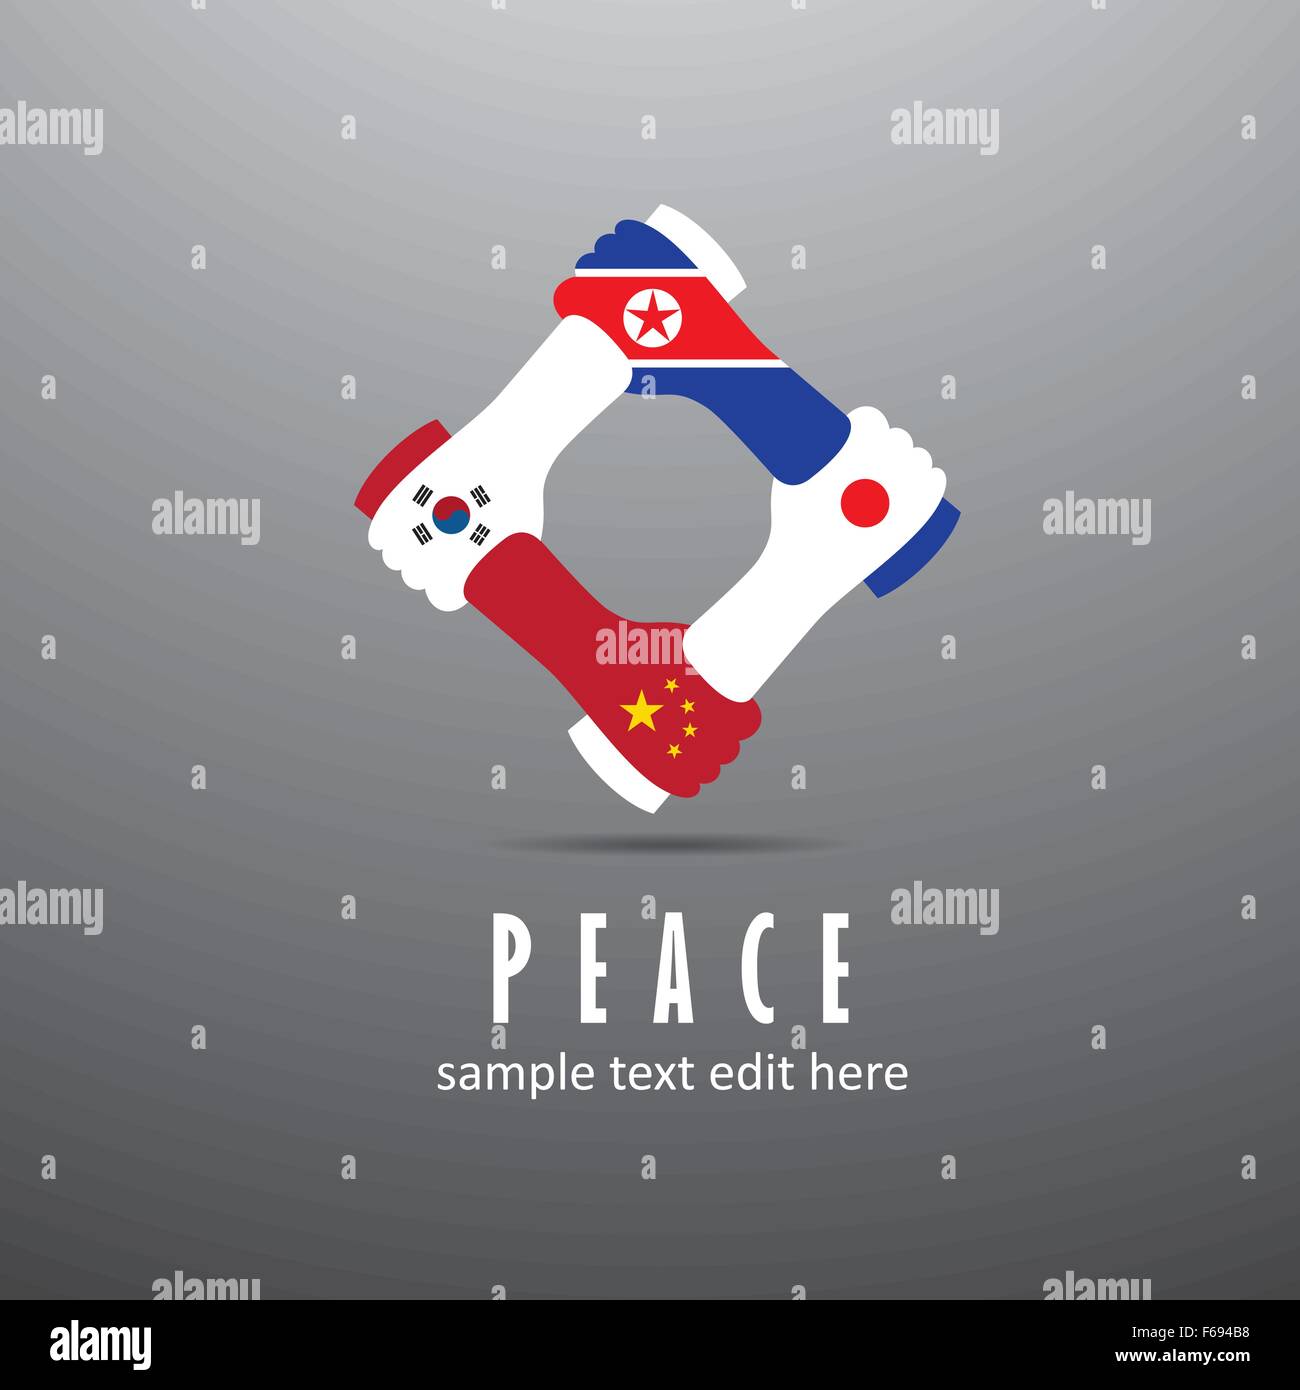 La pace nel mondo icona in sfondo grigio chiaro. Asia orientale Cooperazione delle nazioni - Cina, Giappone, Corea del Sud e Corea del Nord Illustrazione Vettoriale